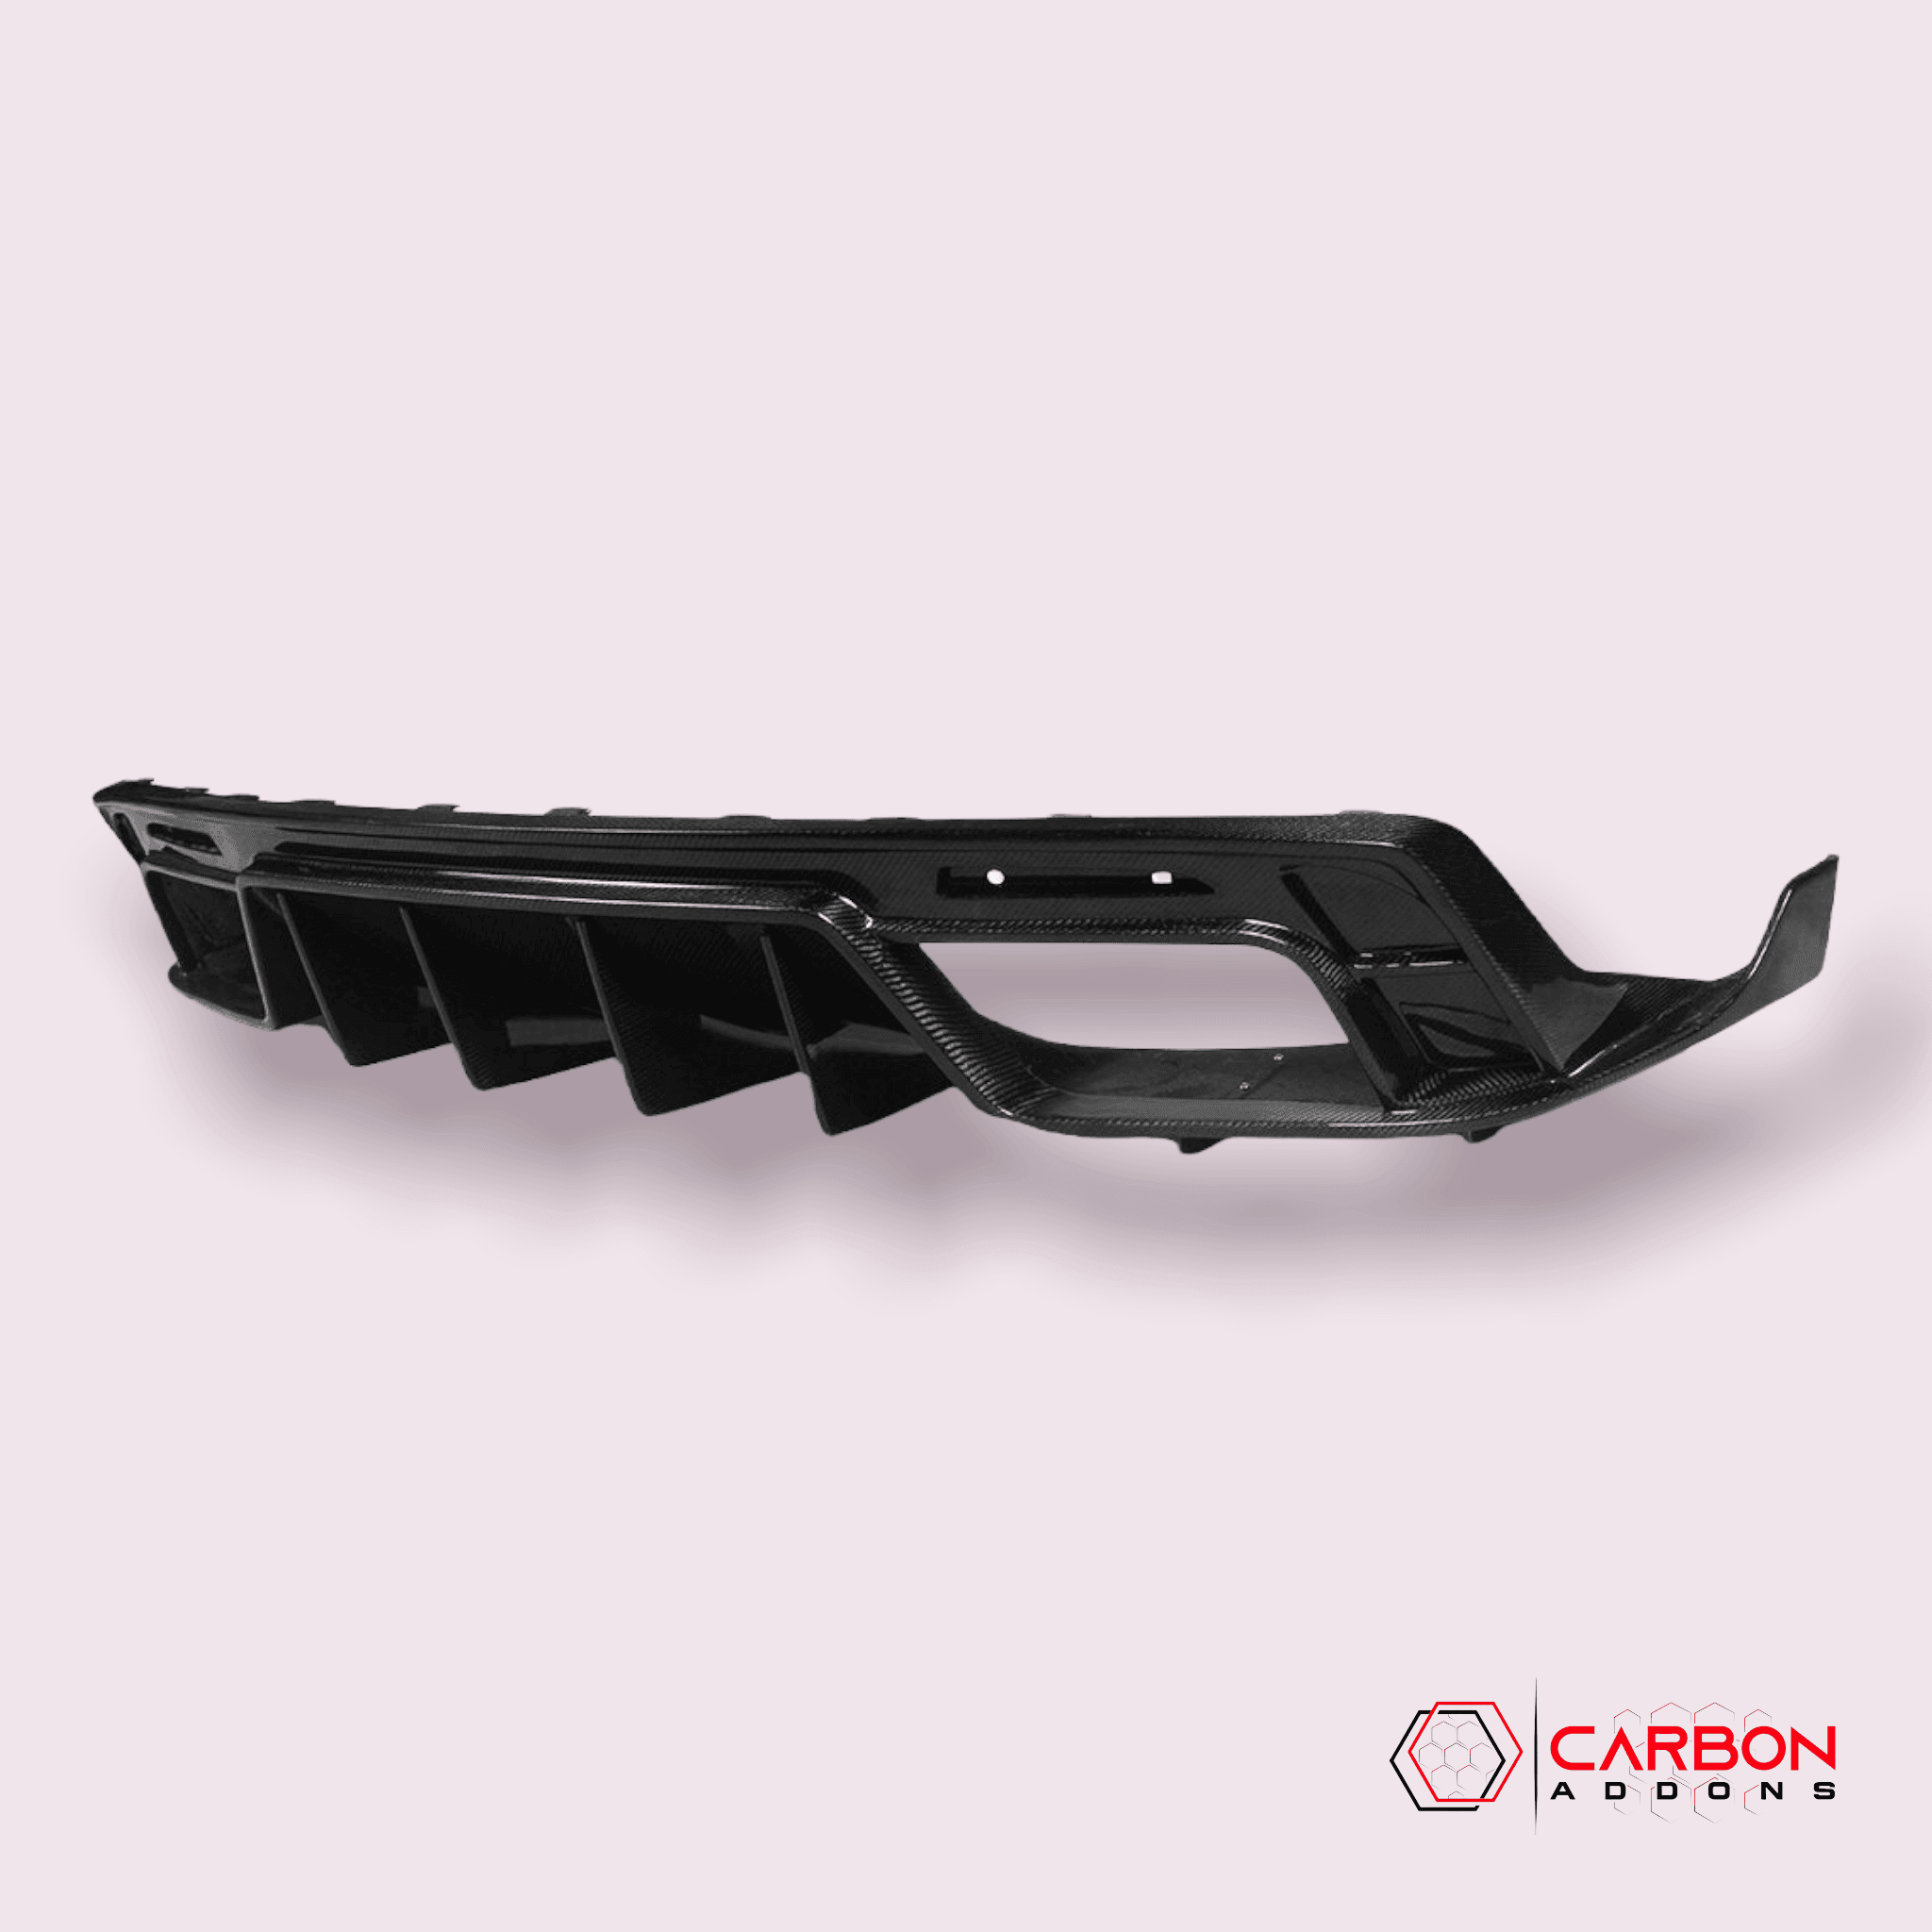 2016 - 2023 CAMARO CARBON FIBER REAR DIFFUSER - carbonaddons Carbon Fiber Parts, Accessories, Upgrades, Mods